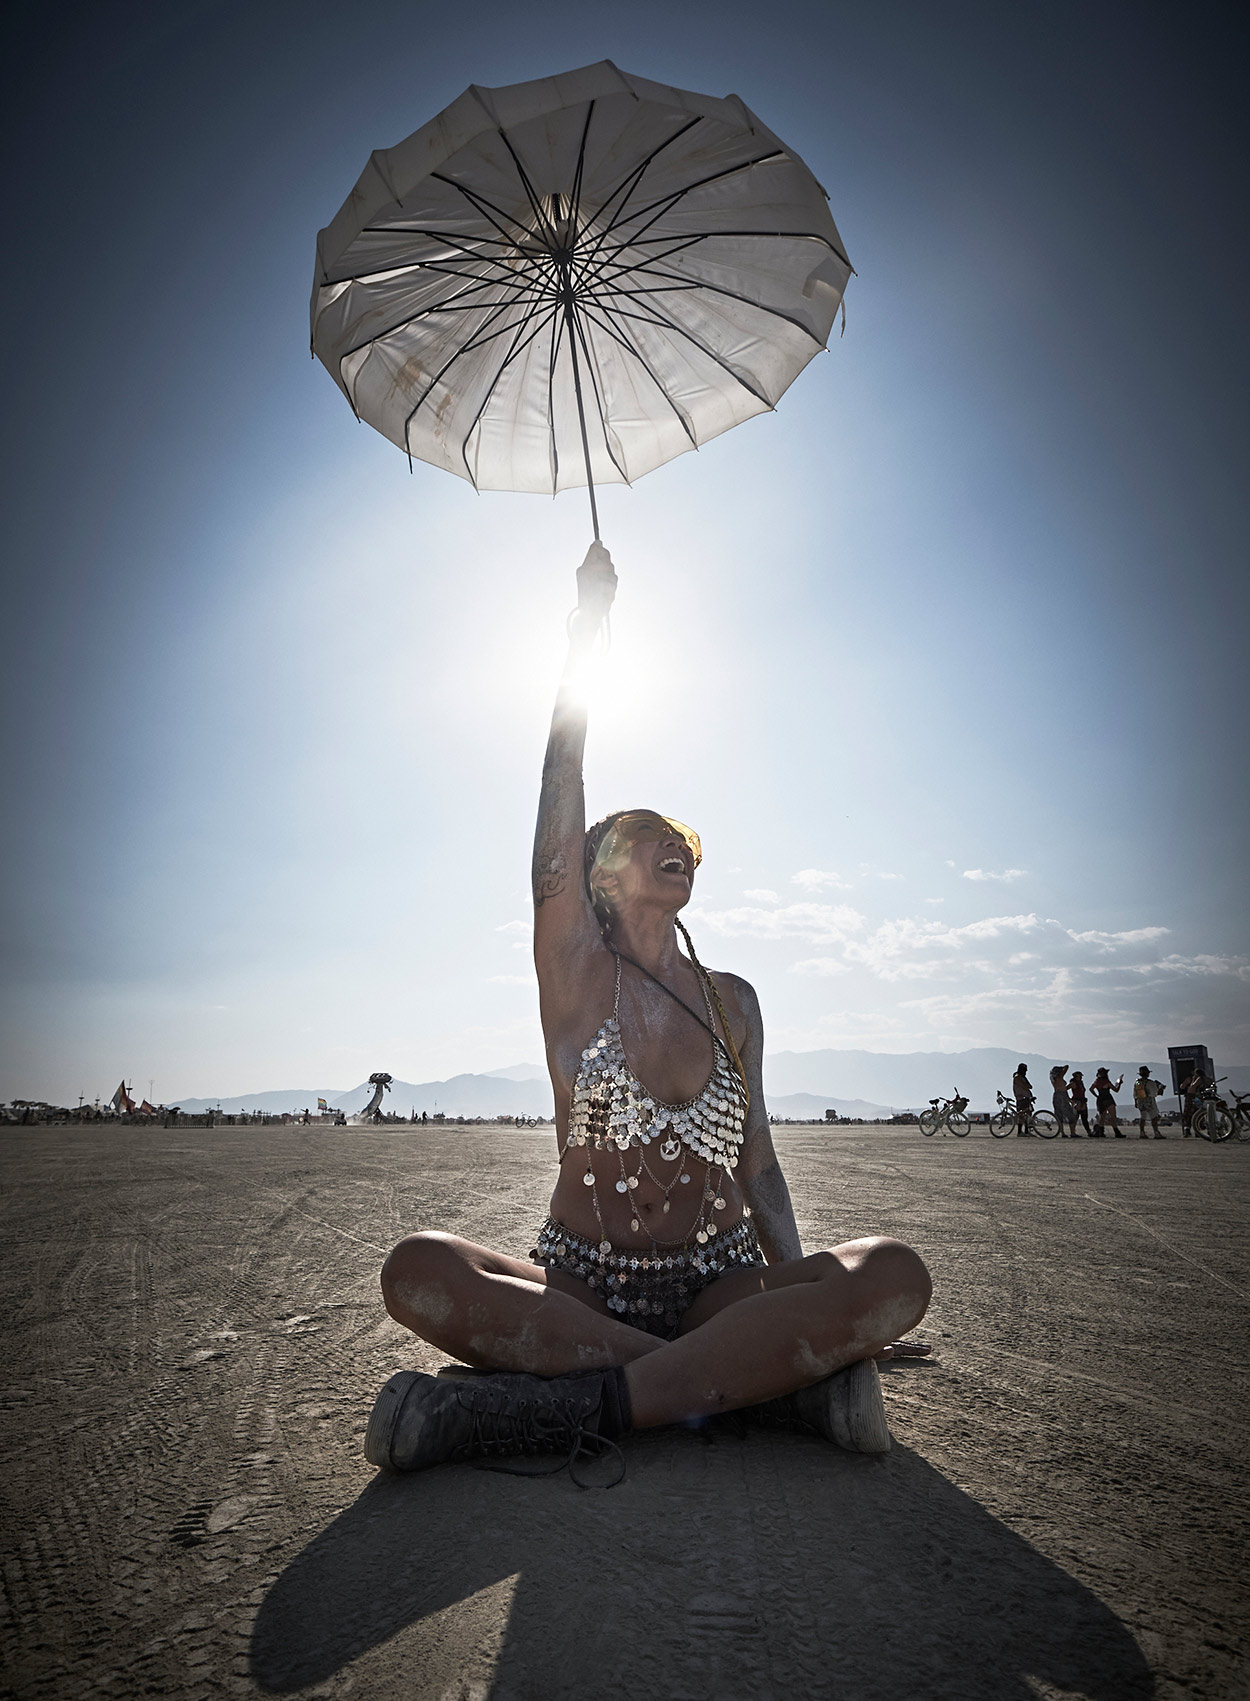 Scott Nibauer | Burning Man